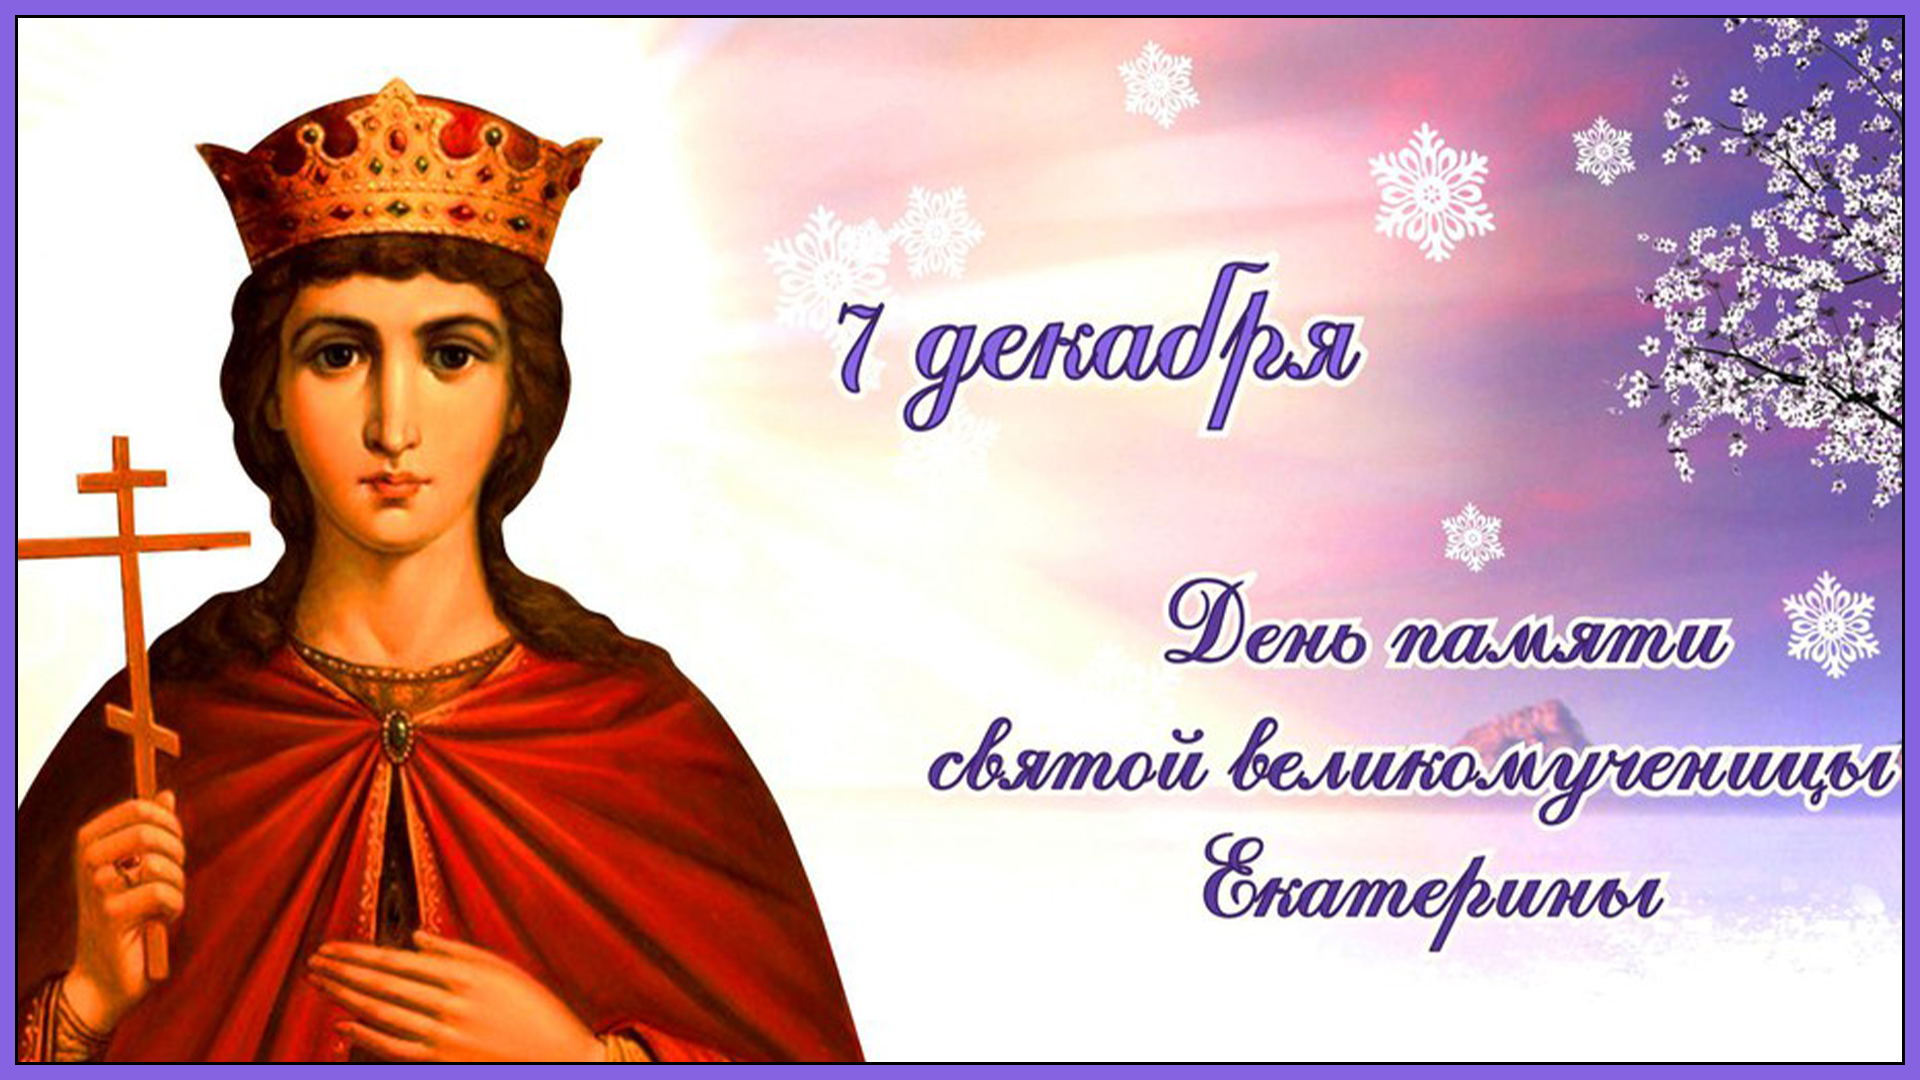 С Днем Святой ЕКАТЕРИНЫ Красивое музыкальное Поздравление! 7 декабря День Великомученицы Екатерины